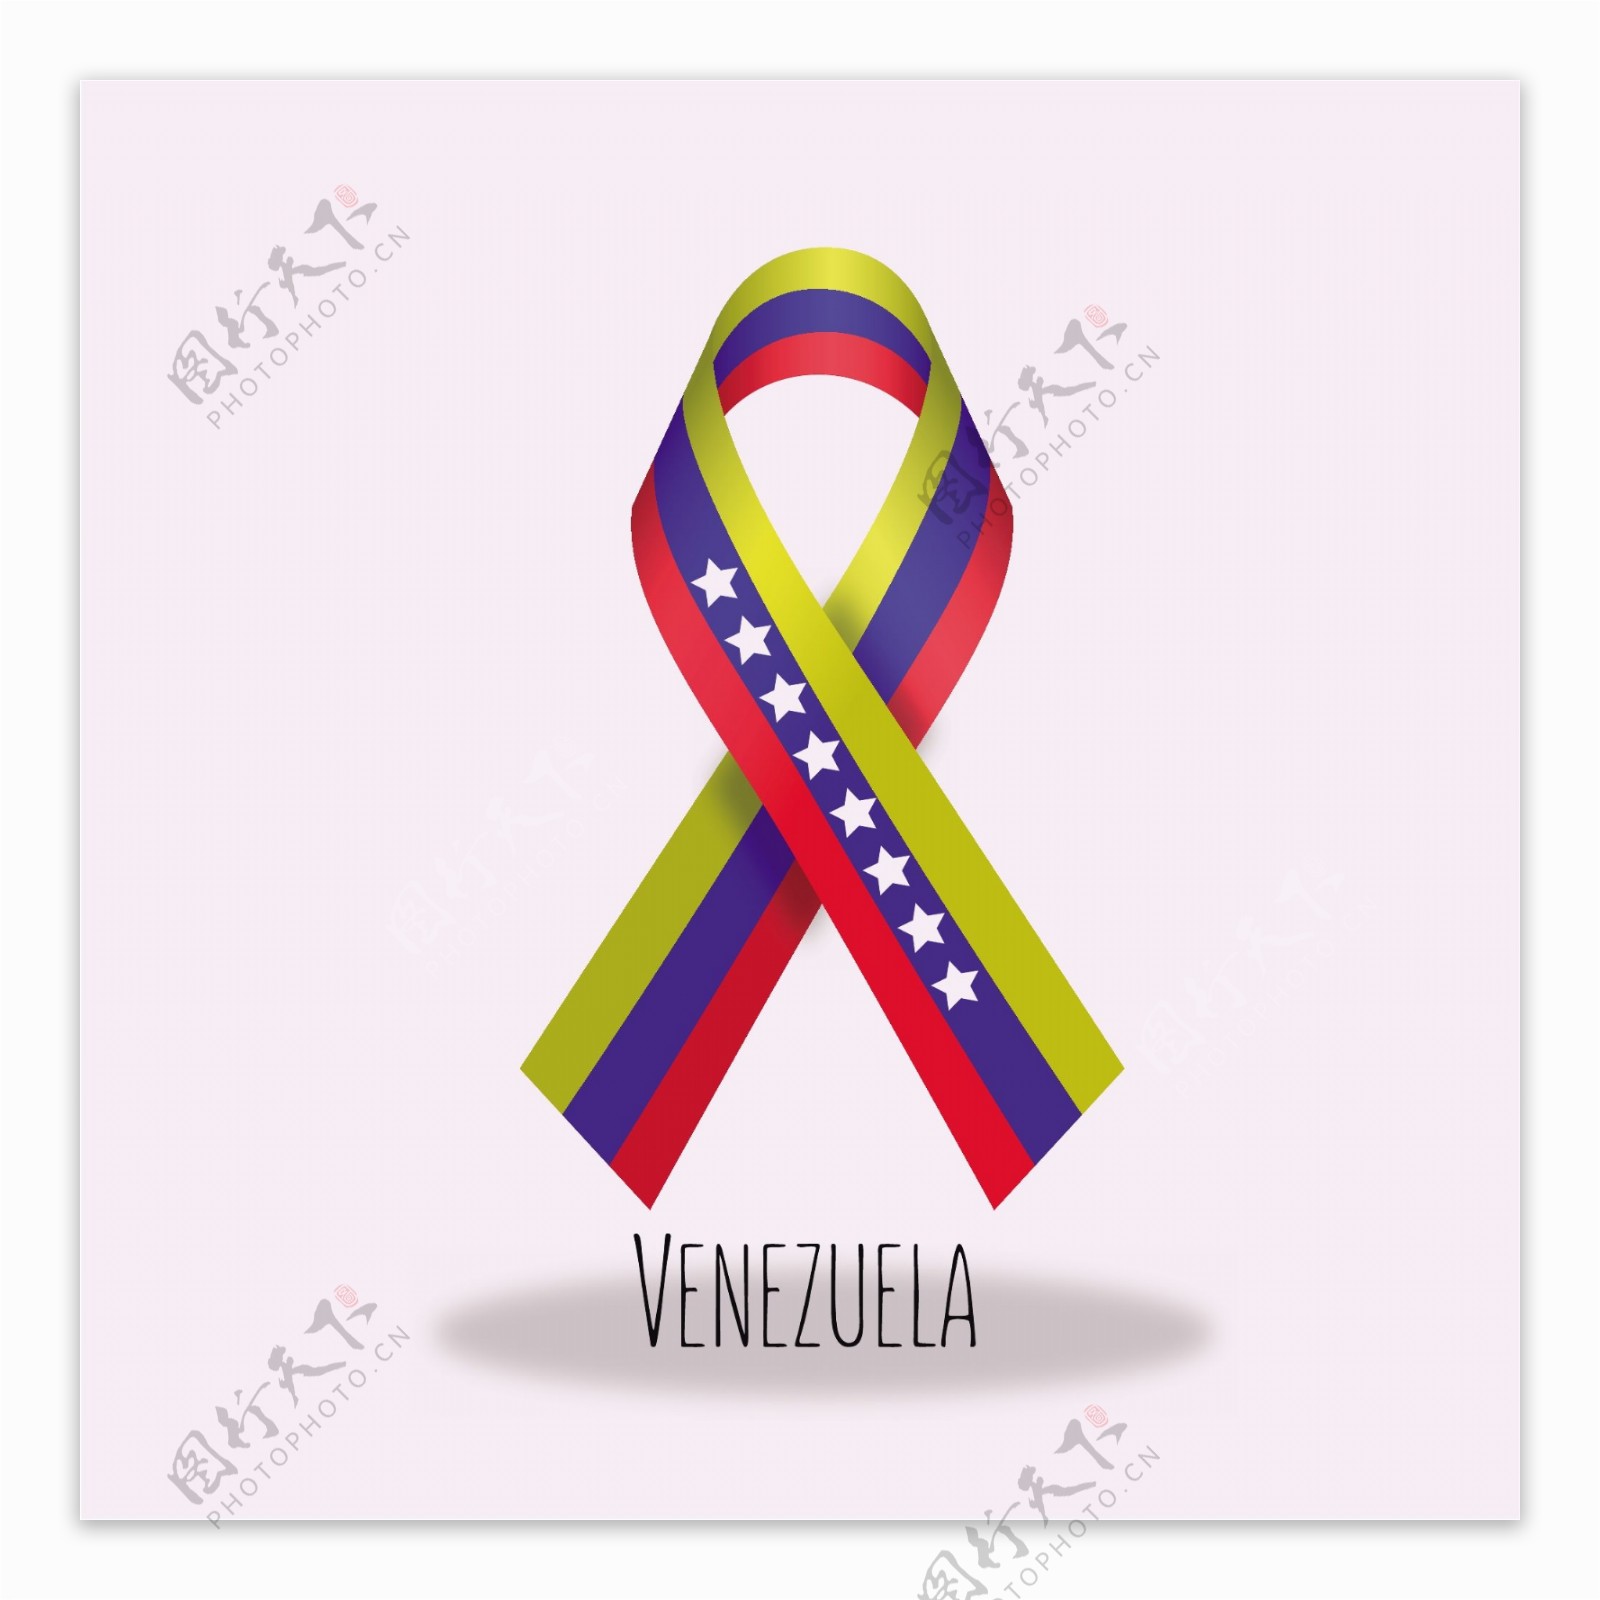 委内瑞拉国旗丝带设计